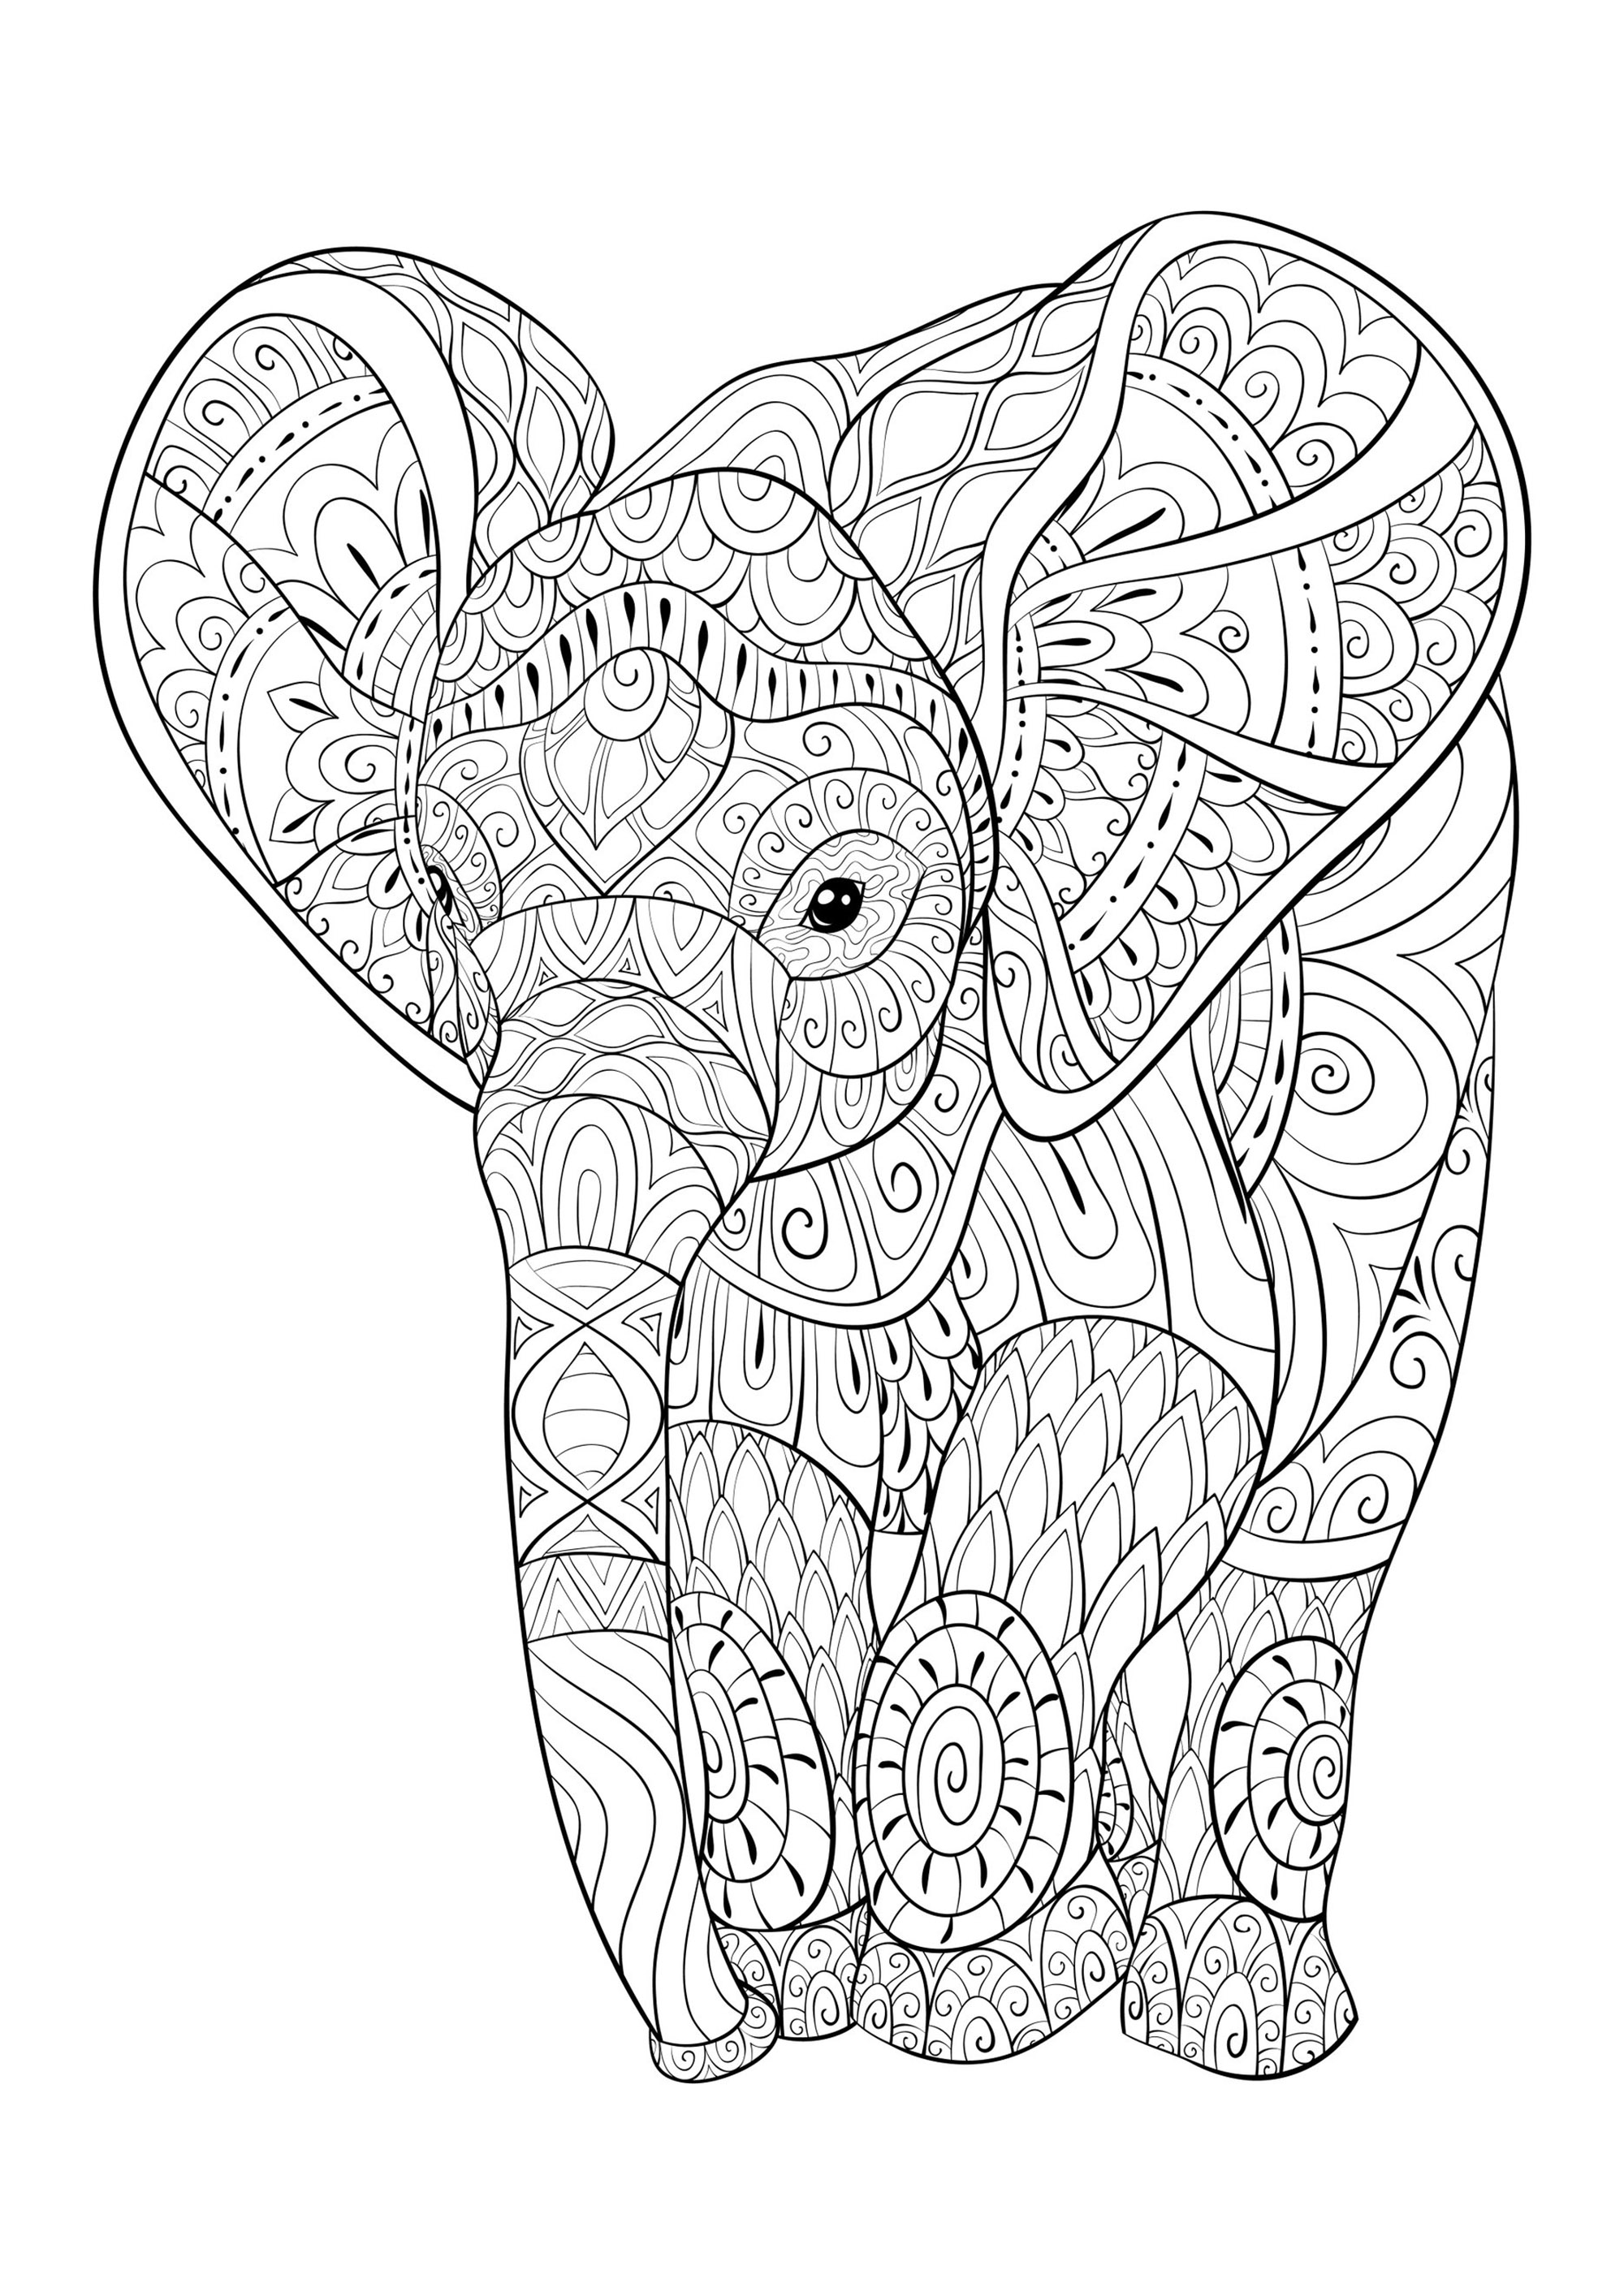 Joven elefante lleno de bonitos dibujos para colorear, Artista : Nonuzza   Origen : 123rf